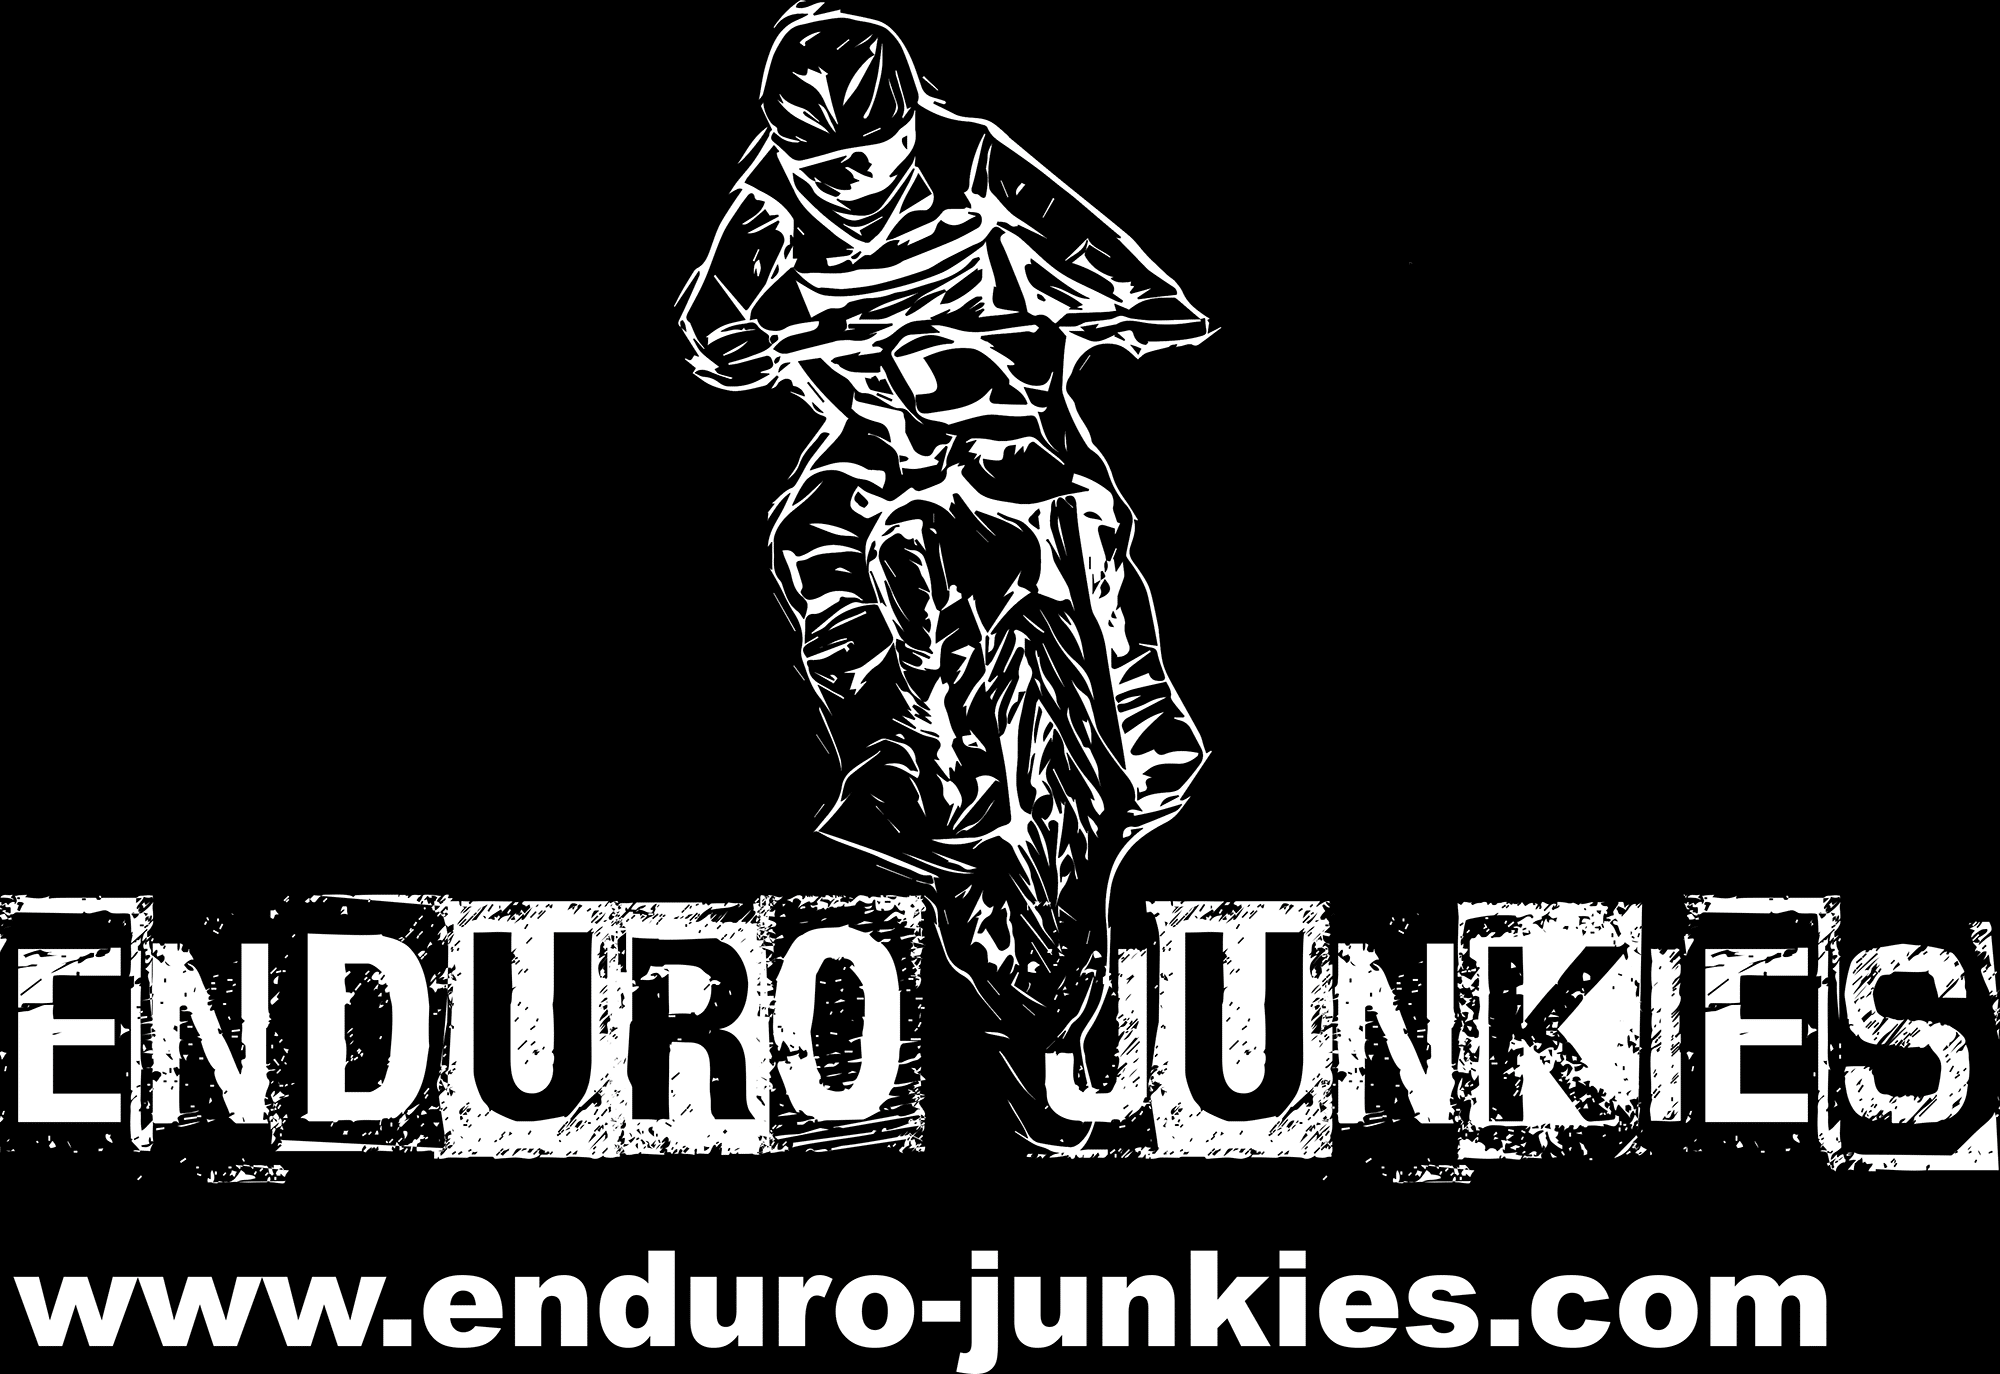 Hard Enduro Austria: Die Enduro Junkies aus der Steiermark